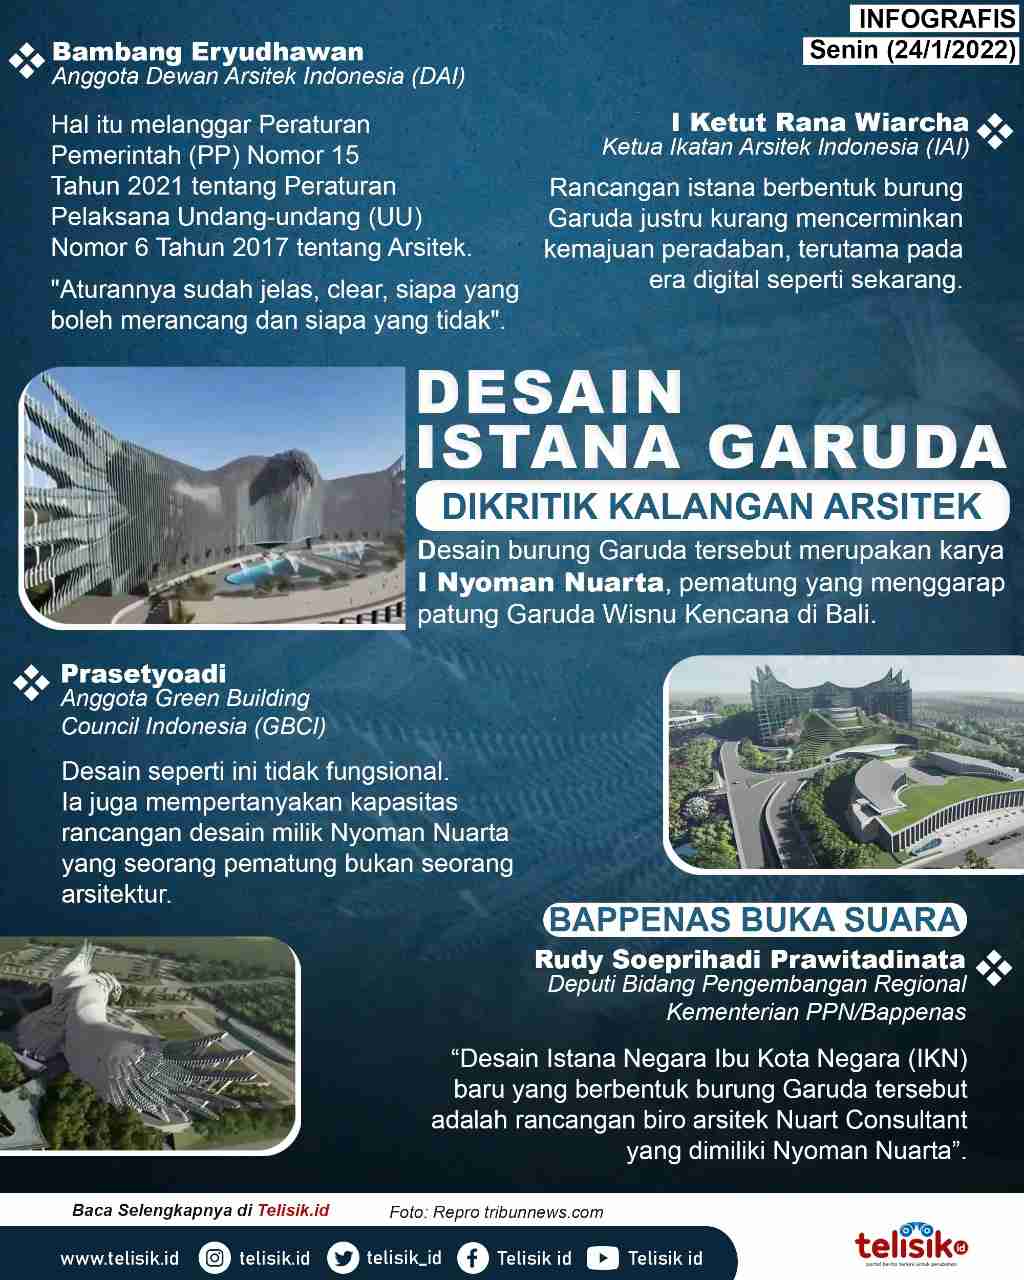 Infografis: Desain Istana Garuda Dikritik Kalangan Arsitek